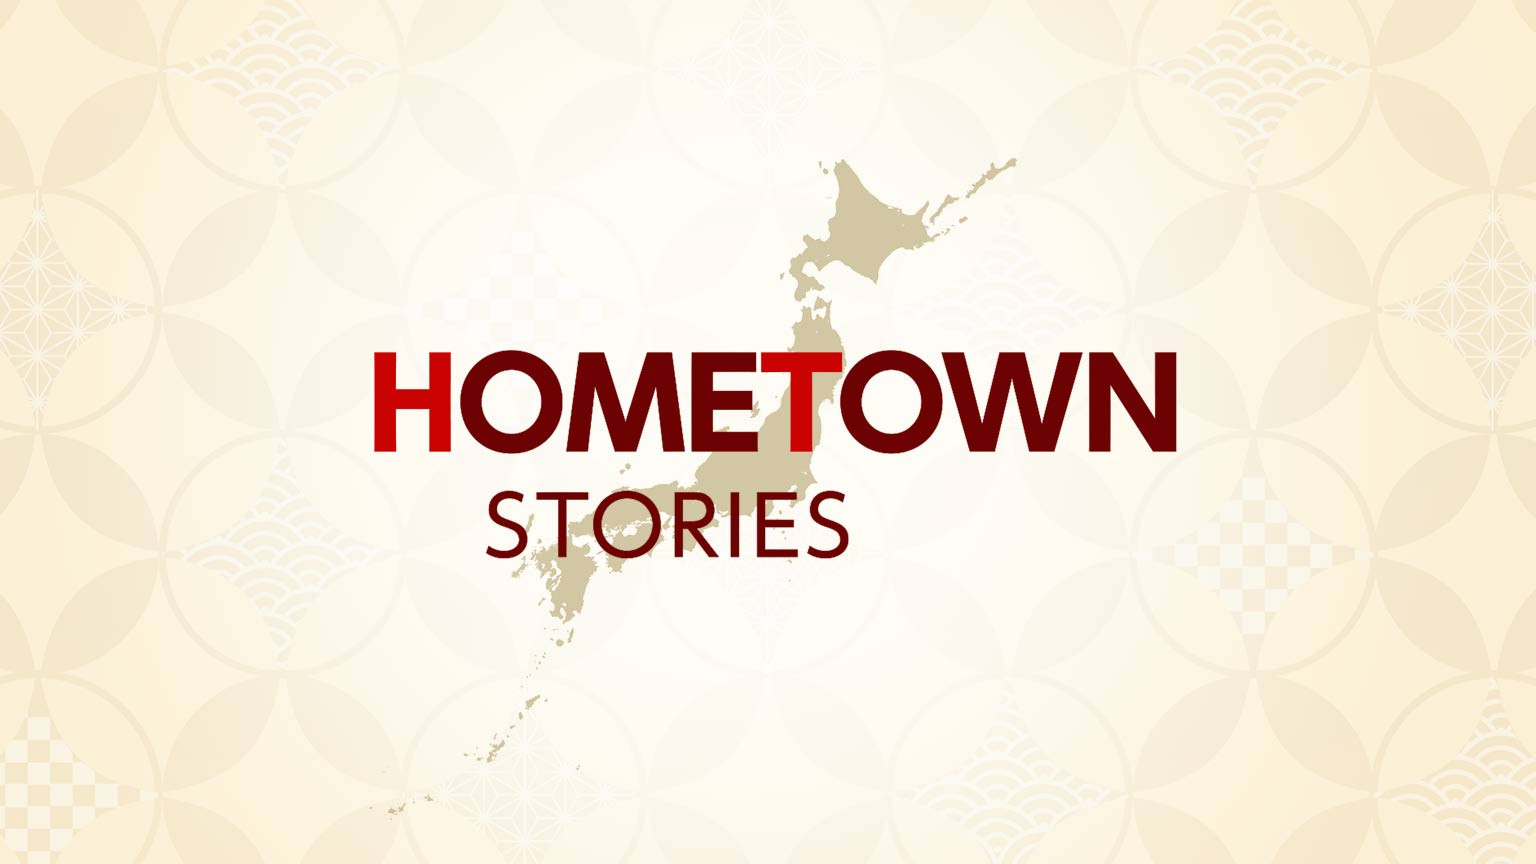 鄉情記事
Hometown Stories